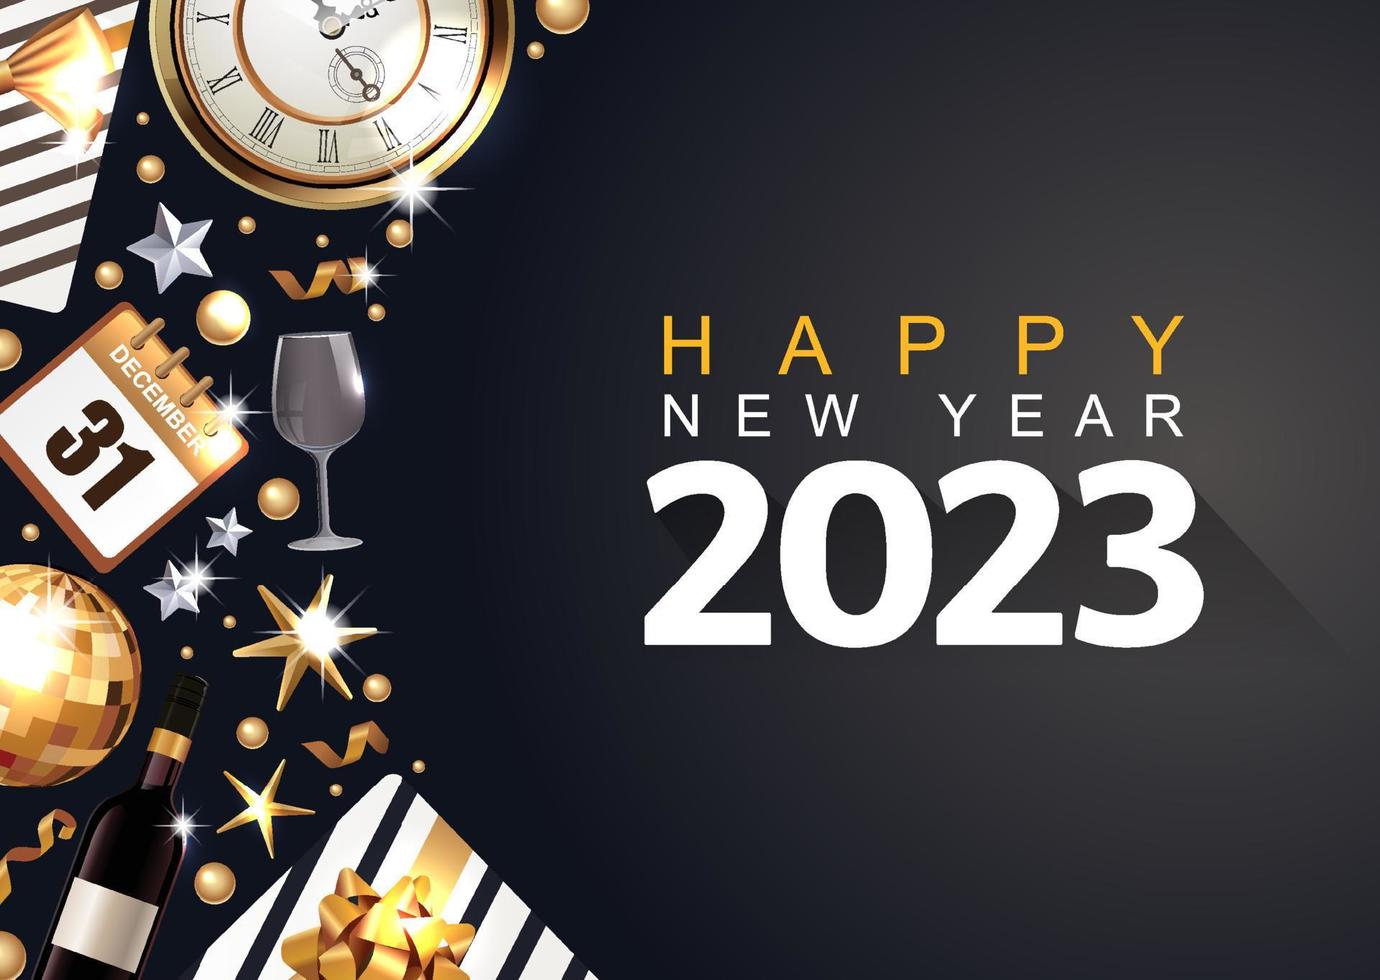 2023 bonne année. bannière de bonne année avec des objets métalliques dorés 2023. fond de luxe sombre. vecteur